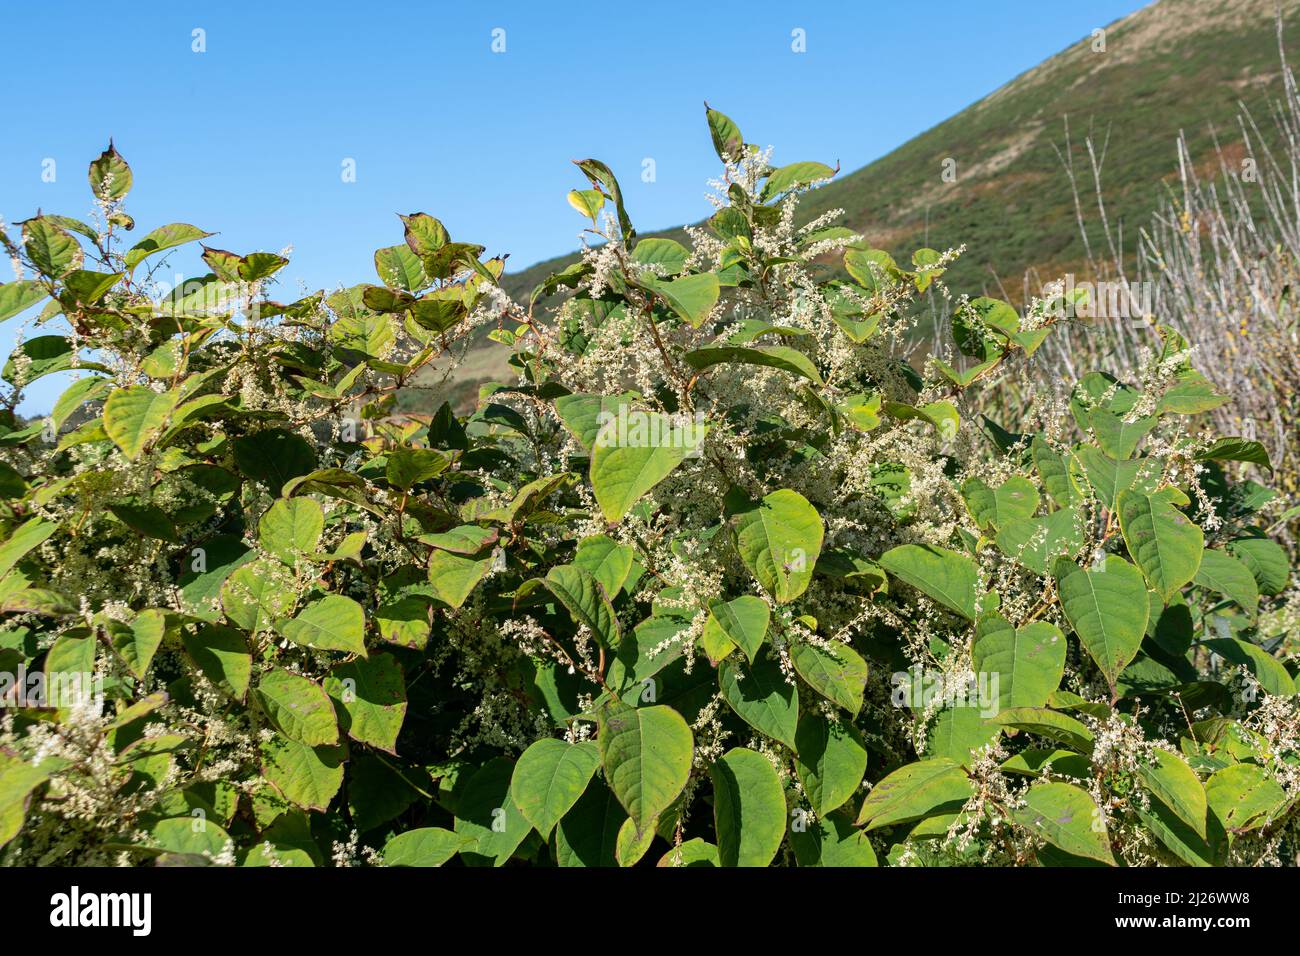 Blühende, aufrechte Stängel japanischer Knoblauchkraut an einem blauen Himmel und grasbewachsenen Hügel. Eine Fülle von weißen Blüten auf Zickzack-Stielen typisch für diese invasive Stockfoto